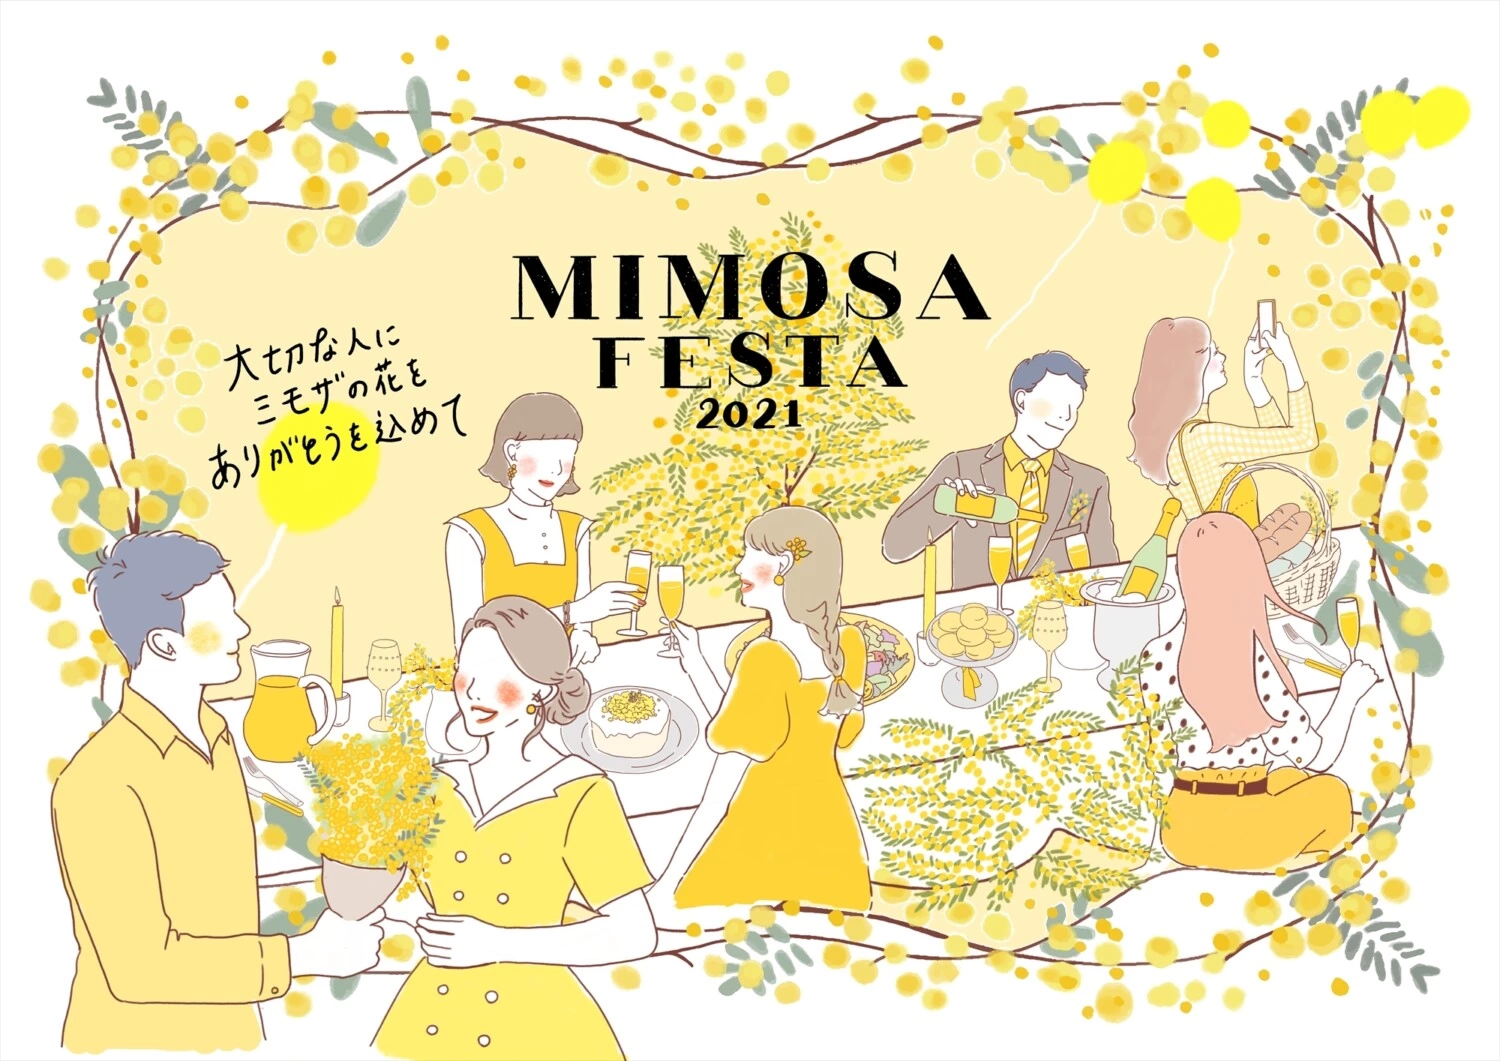 MIMOSA FESTA 2021